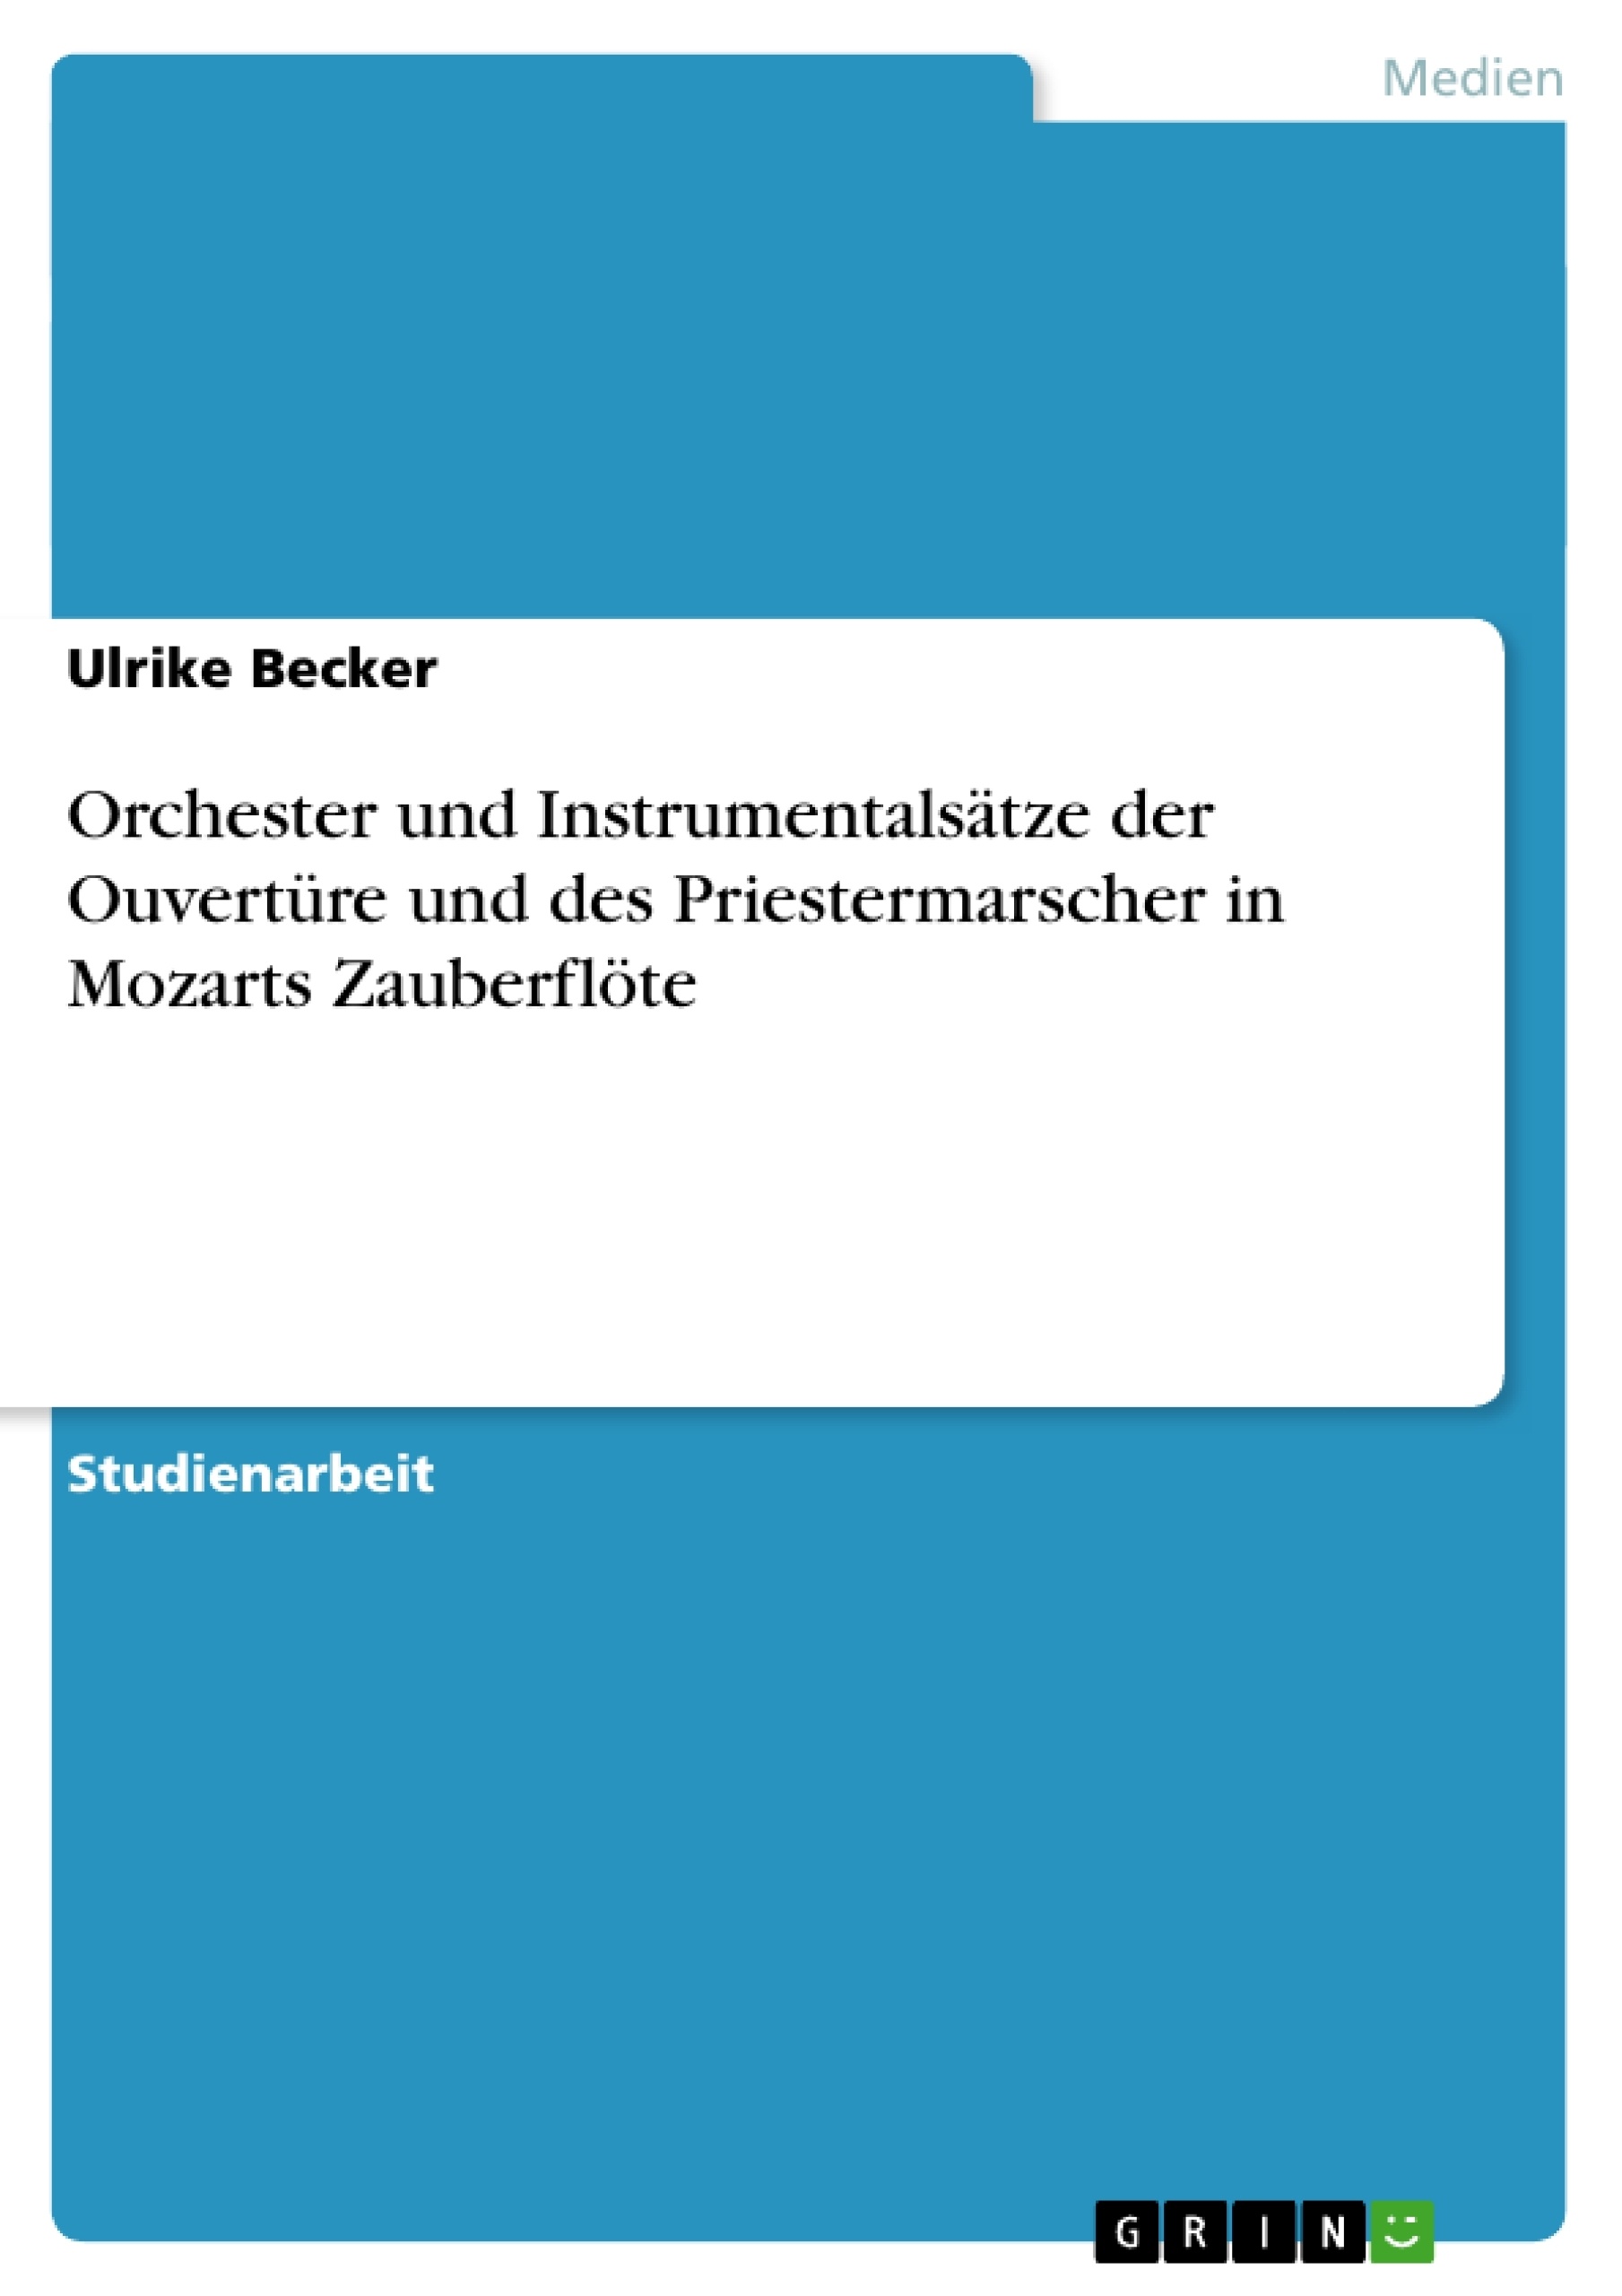 Titre: Orchester und Instrumentalsätze der Ouvertüre und des Priestermarscher in Mozarts Zauberflöte